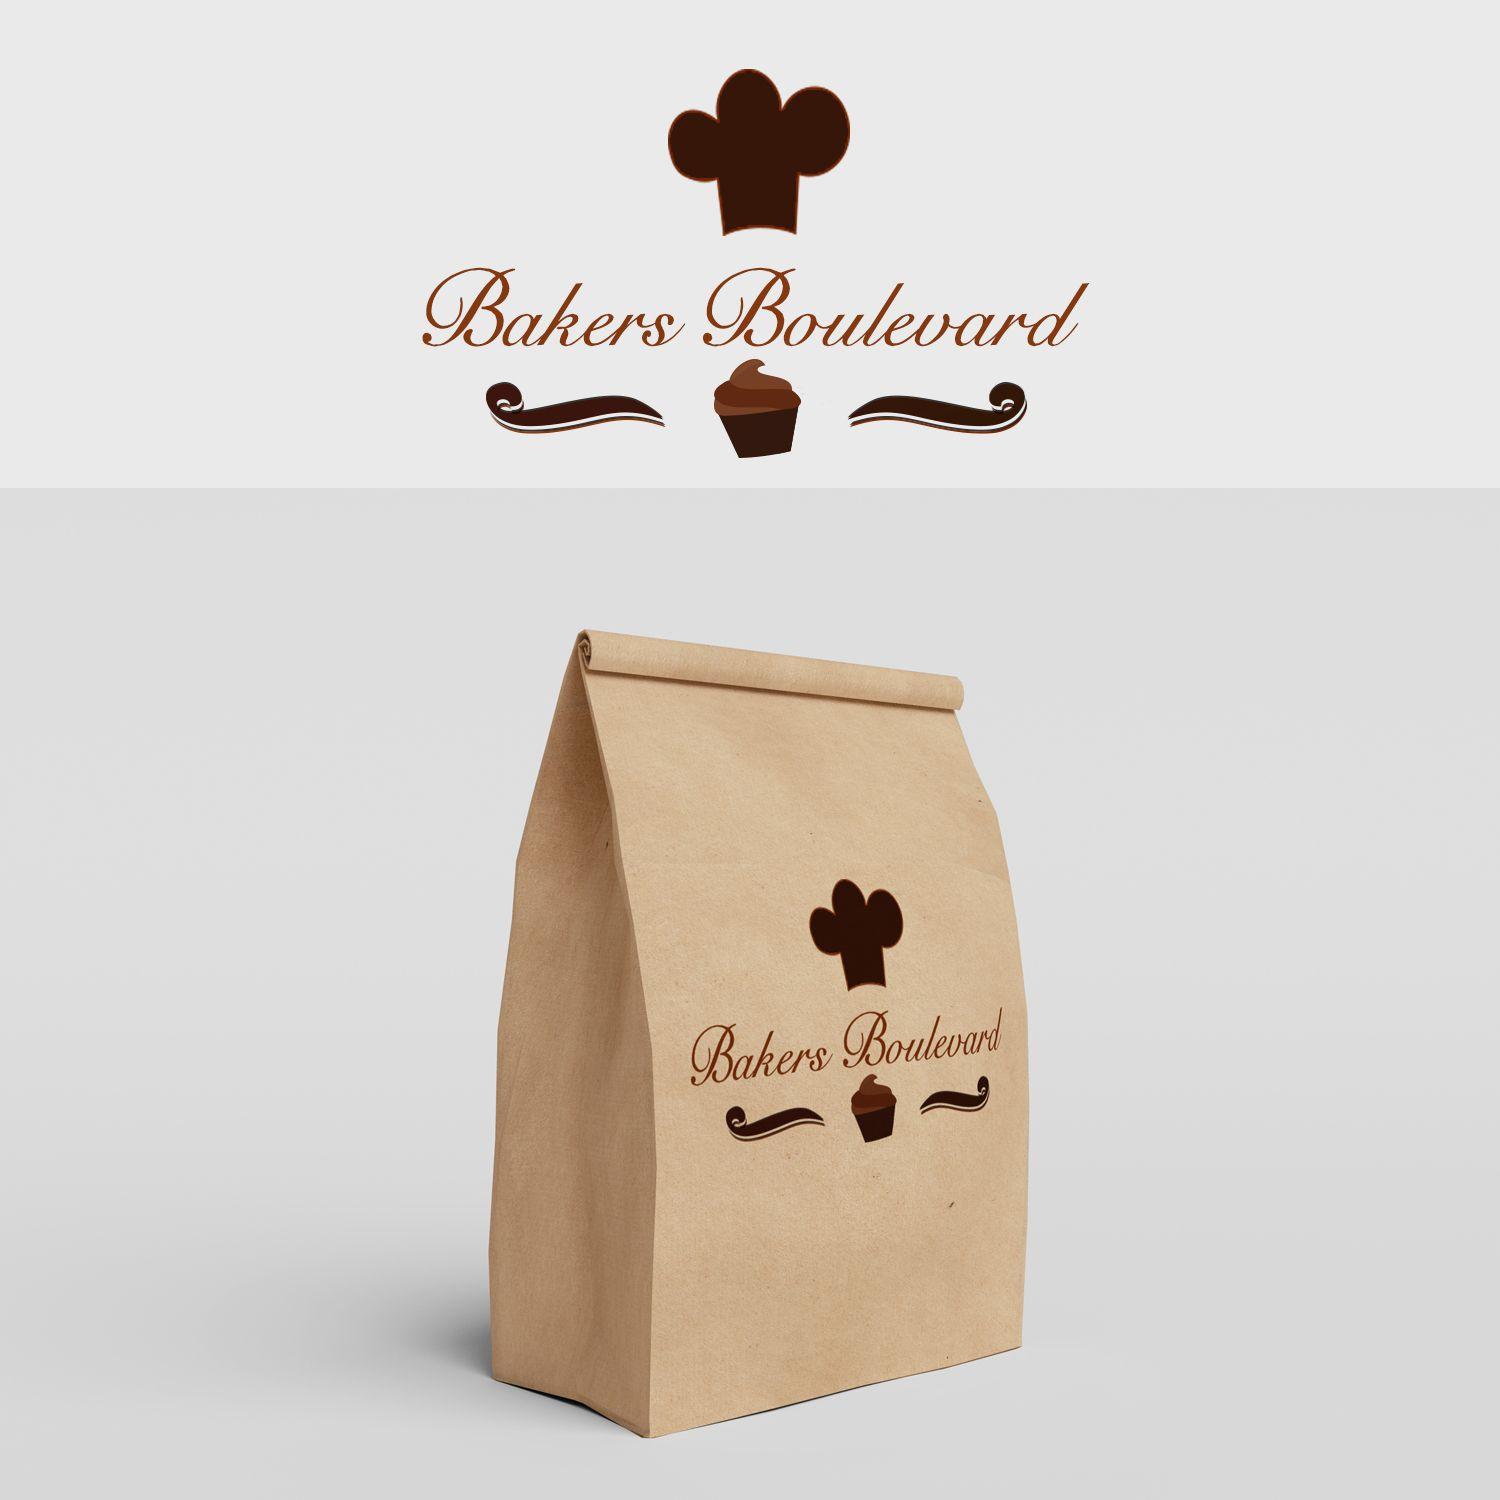 Kangaroo Bakery Logo - Modern, Elegant, Bakery Logo Design for Bakers' Boulevard by ...